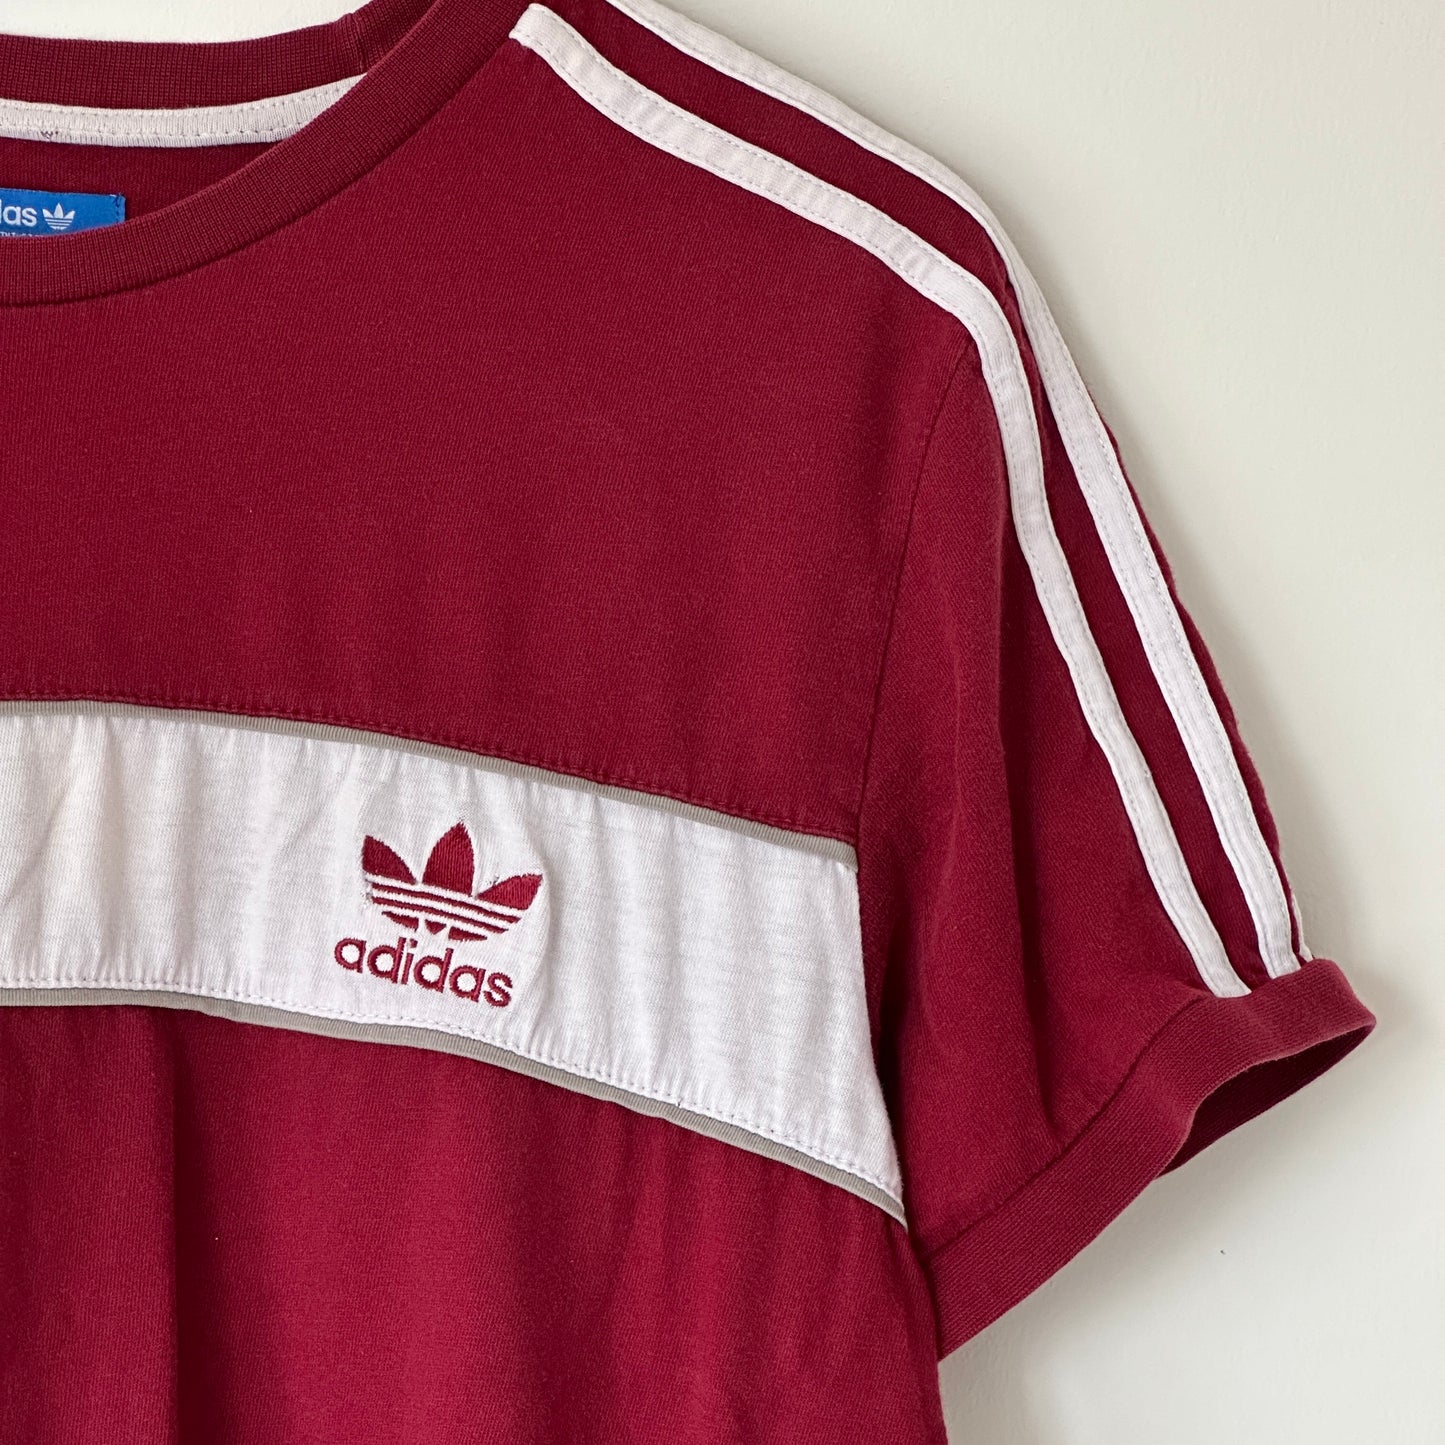 Adidas Original 2016 3-stripes brand red T-shirt